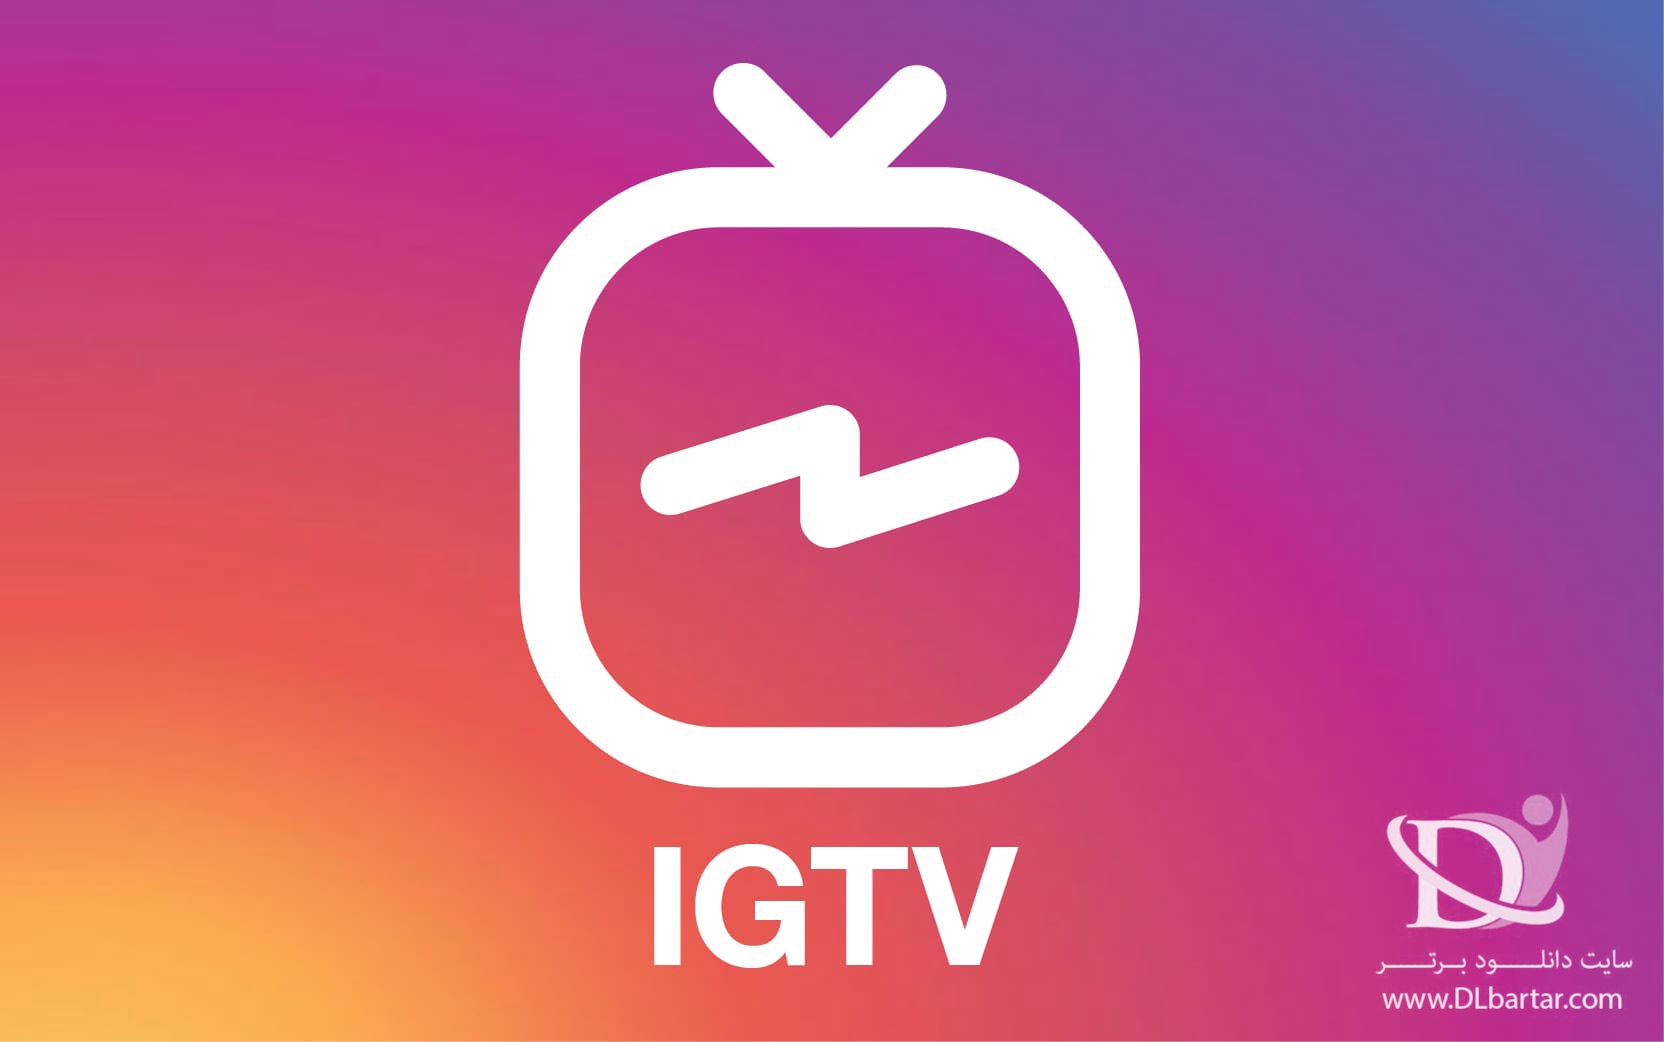 دانلود IGTV 112.0.0.25.121 - برنامه ای جی تی وی (تلویزیون اینستاگرام) برای اندروید و ios